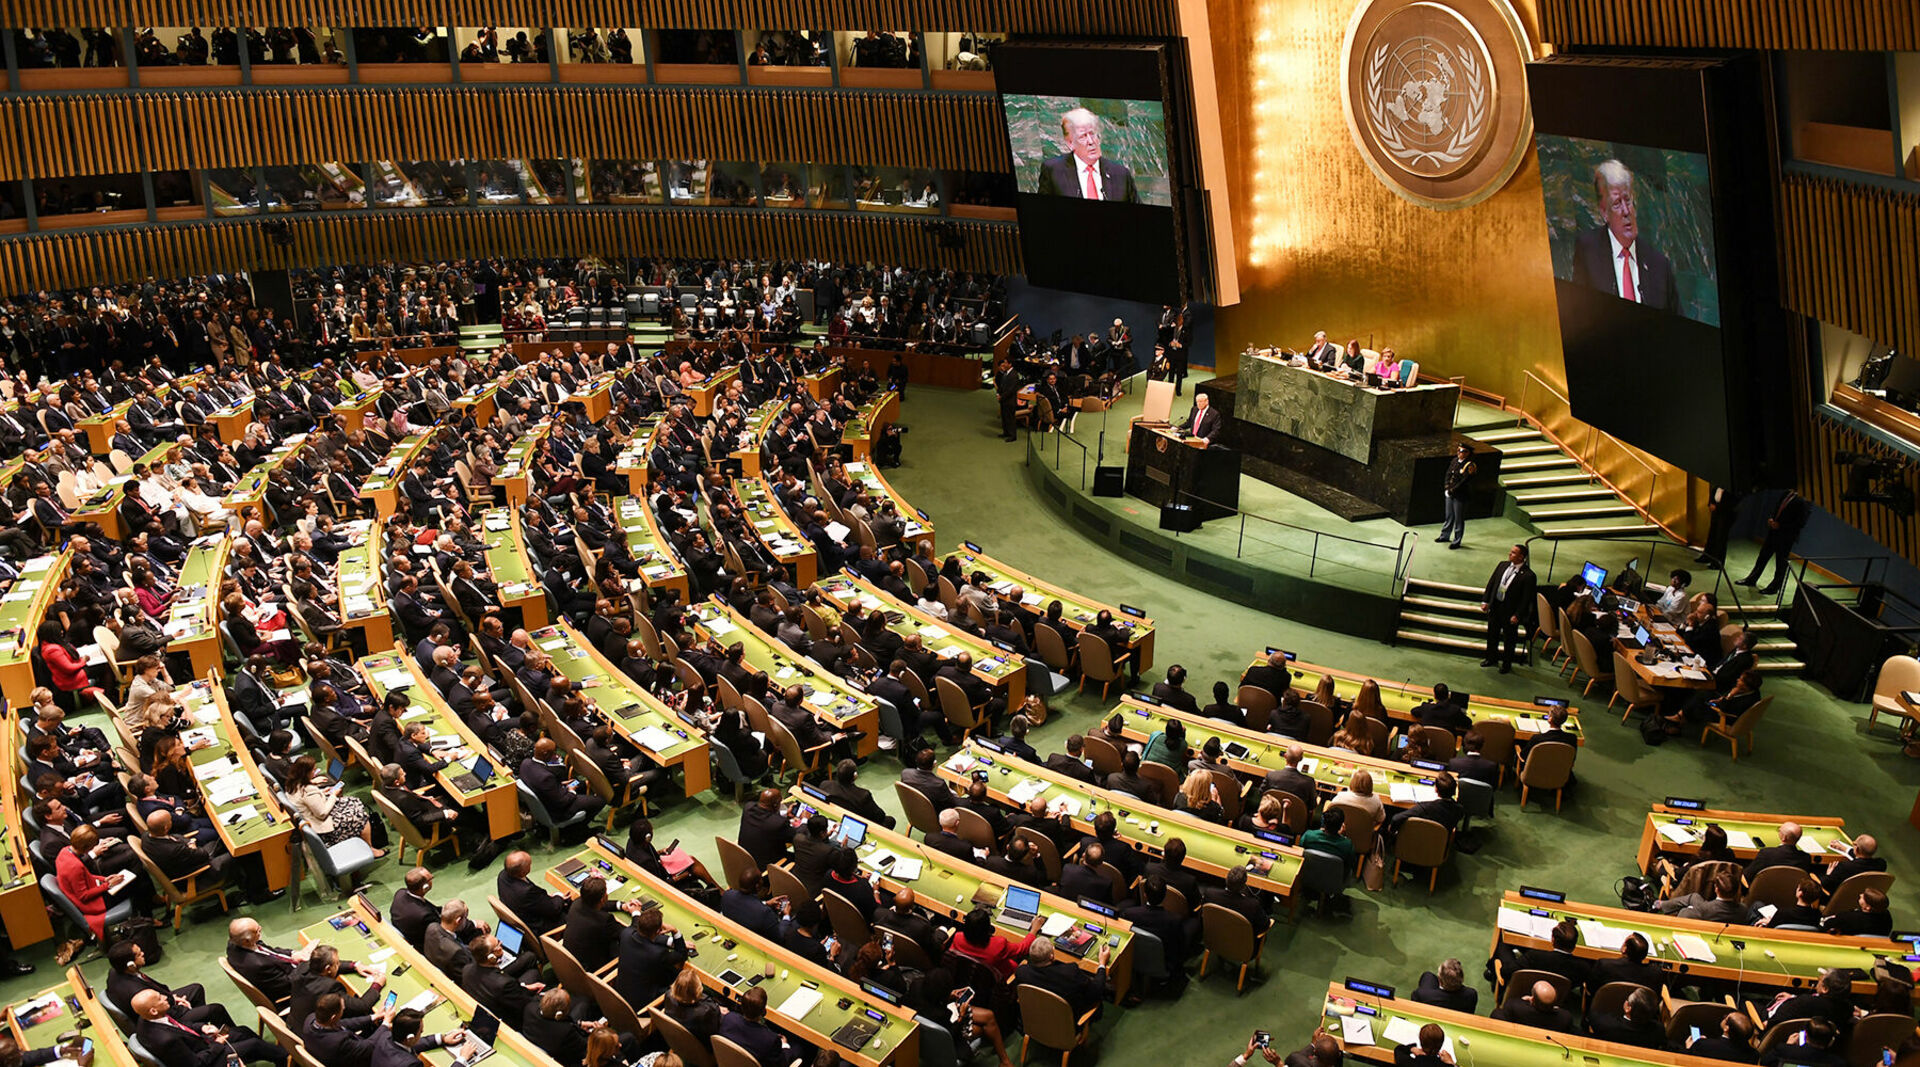 Резолюция стран оон. Зал Генеральной Ассамблеи ООН. Зал заседания Генеральной Ассамблеи ООН. 79 Генеральная Ассамблея ООН. Зал заседаний Генассамблеи ООН.